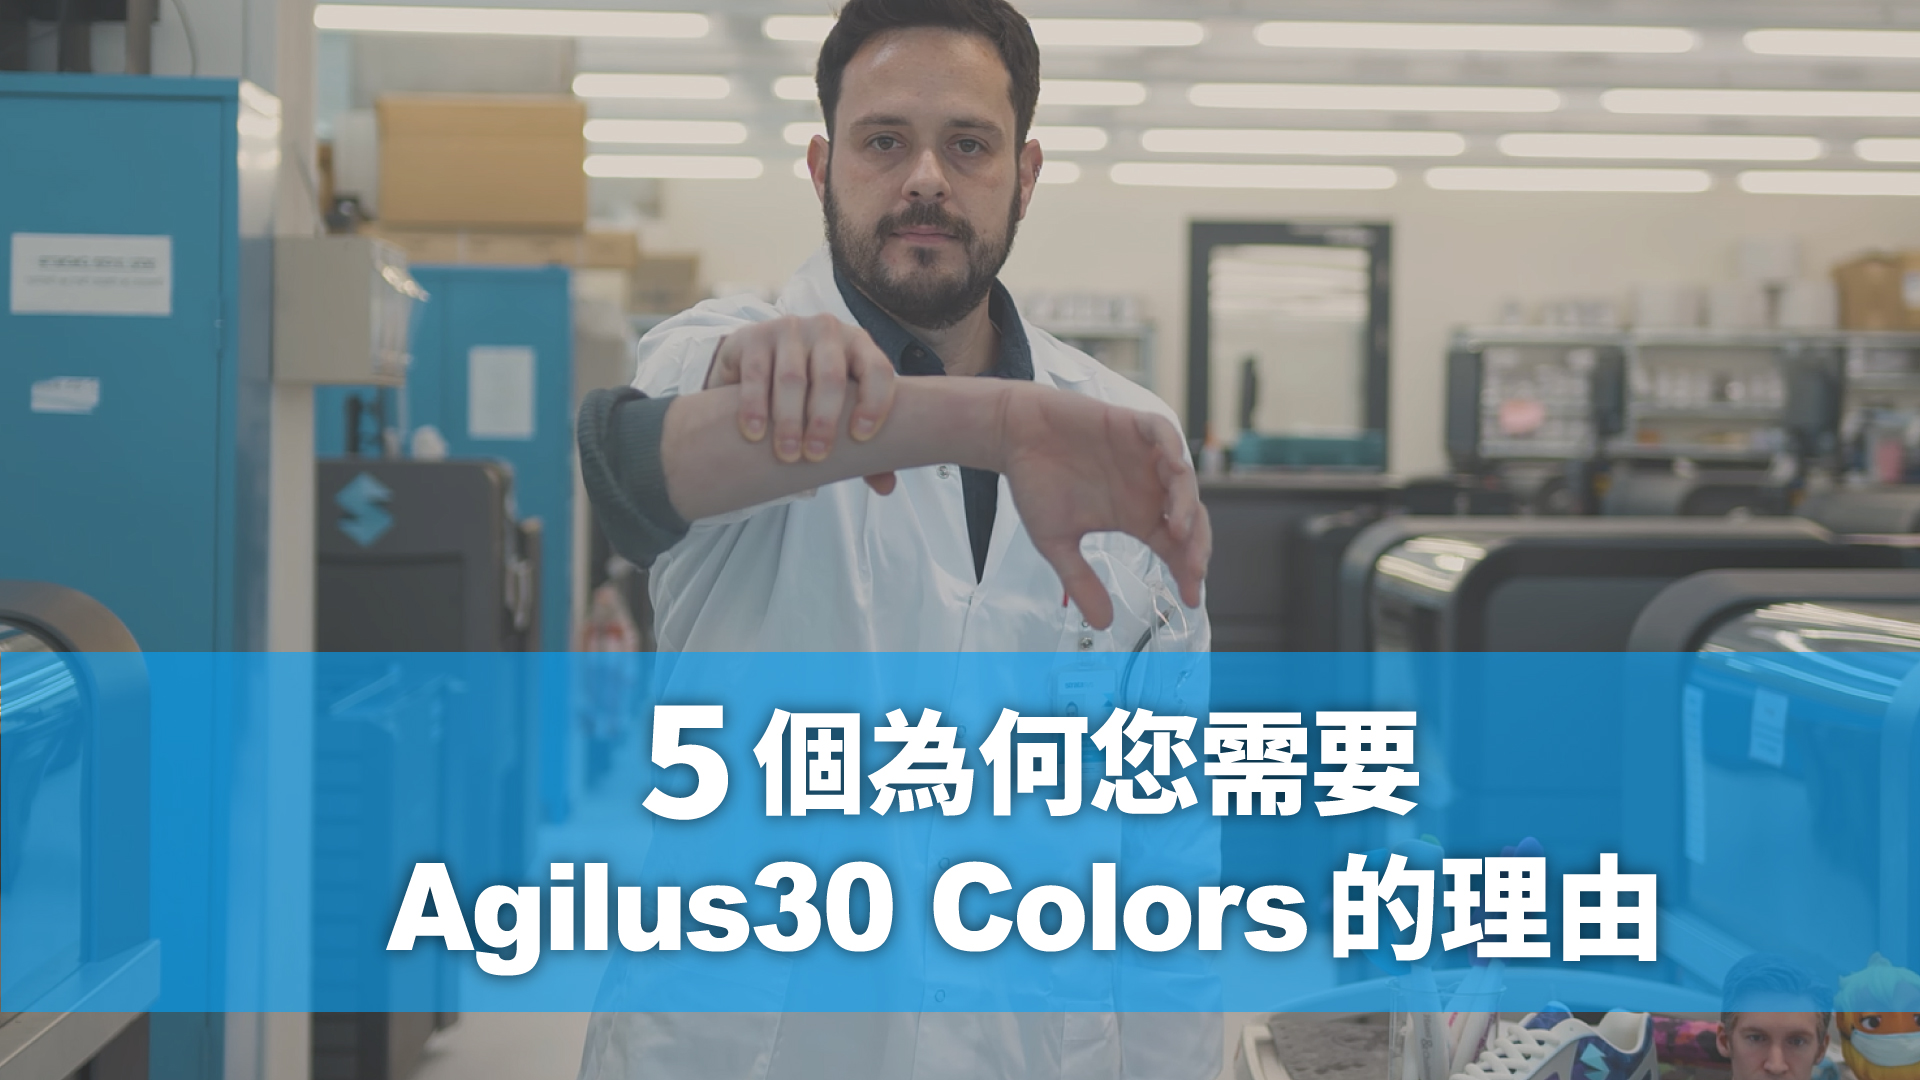 5個您為何需要全新Agilus30 Colors的理由